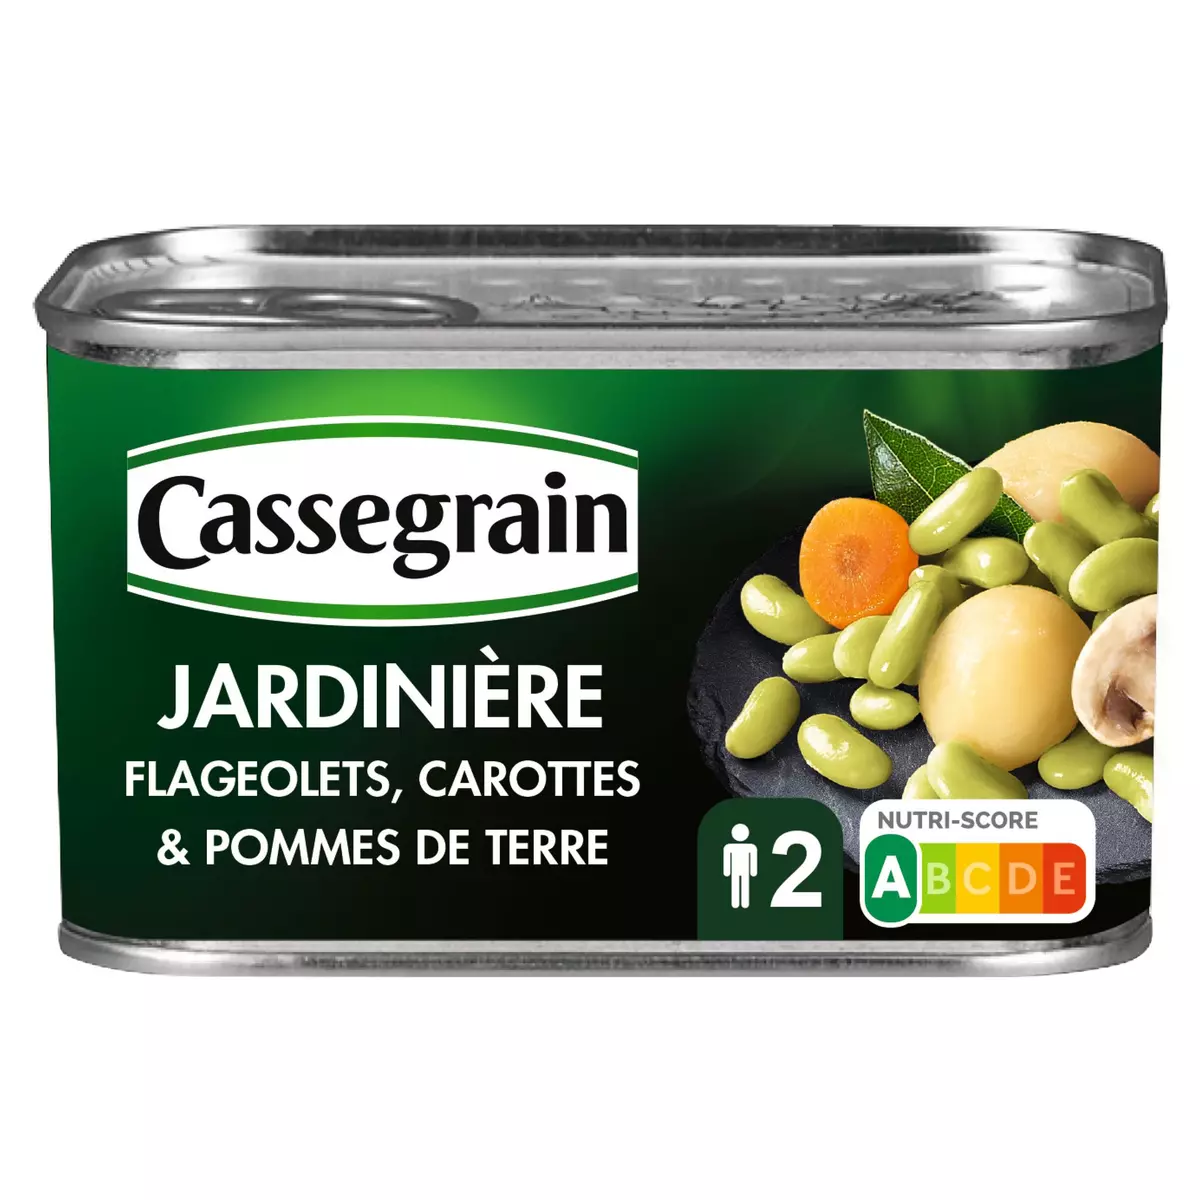 CASSEGRAIN Jardinière flageolets carottes et pommes de terre 265g